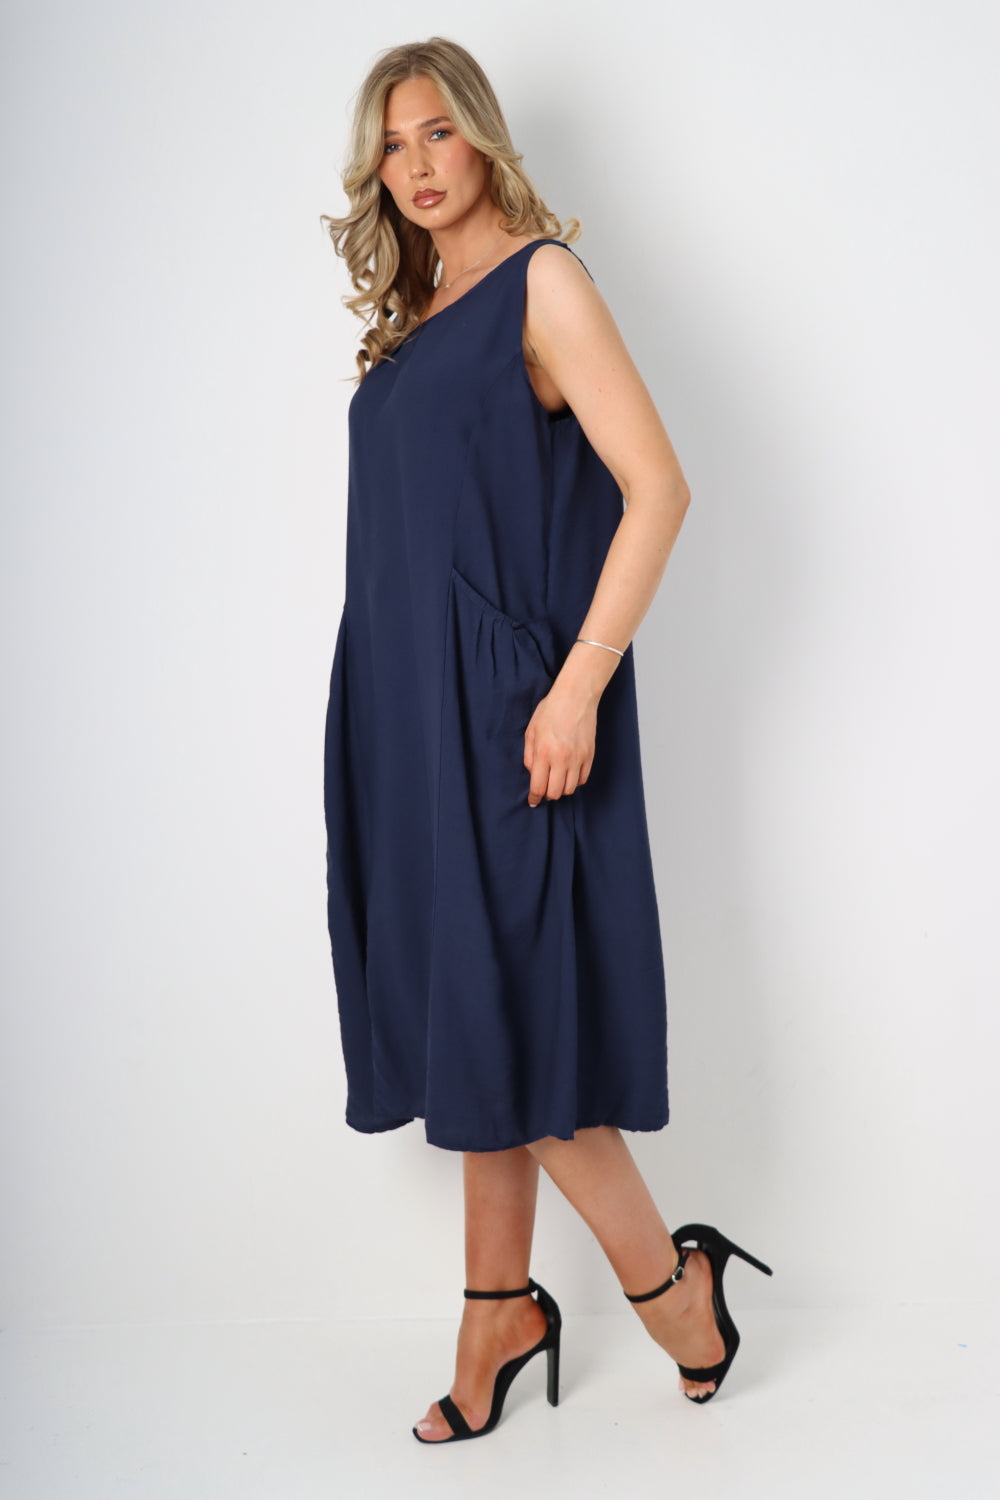 Italian Pockets Sleeveless Vest Midi Dress